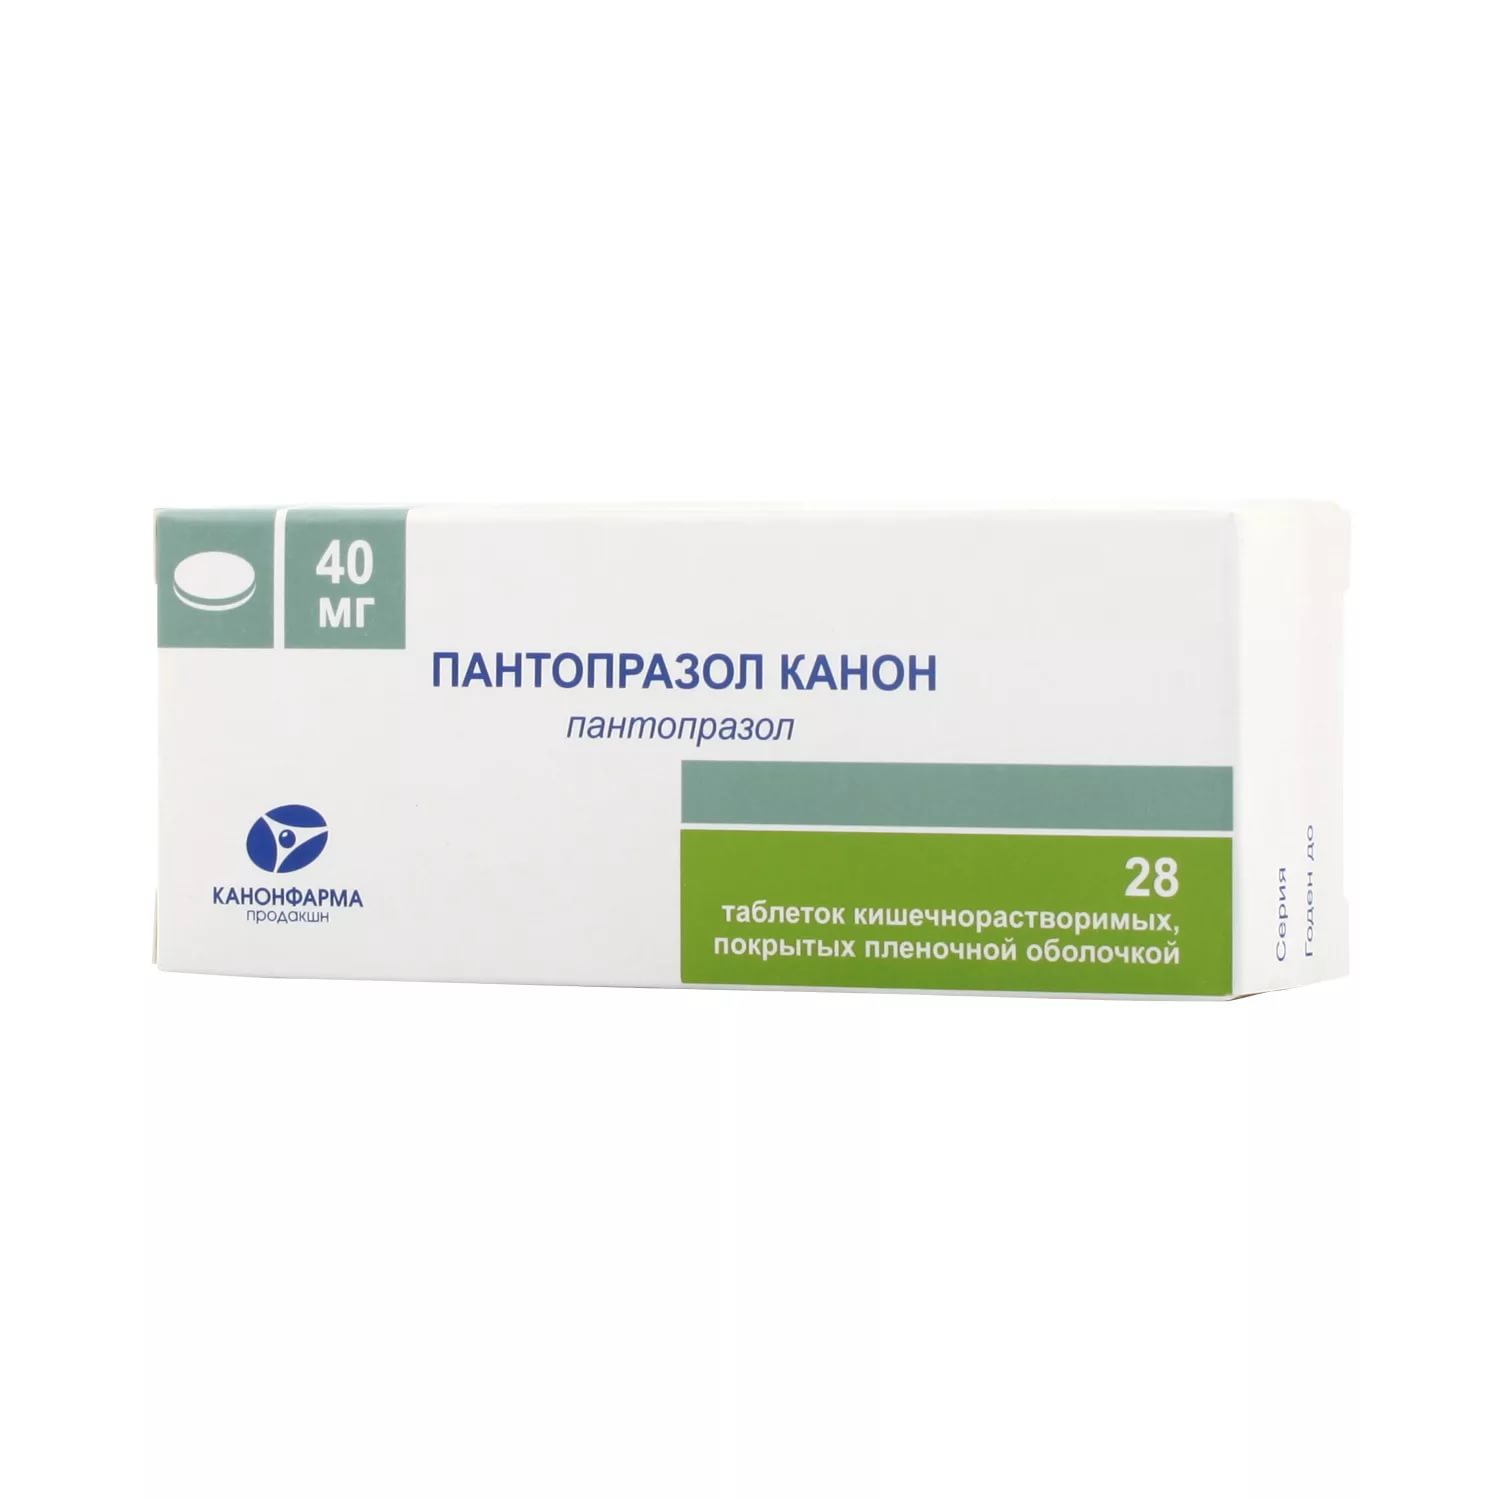 Пантопразол Канон таблетки кишечнорастворимые покрытые пленочной оболочкой 40 мг 28 шт.